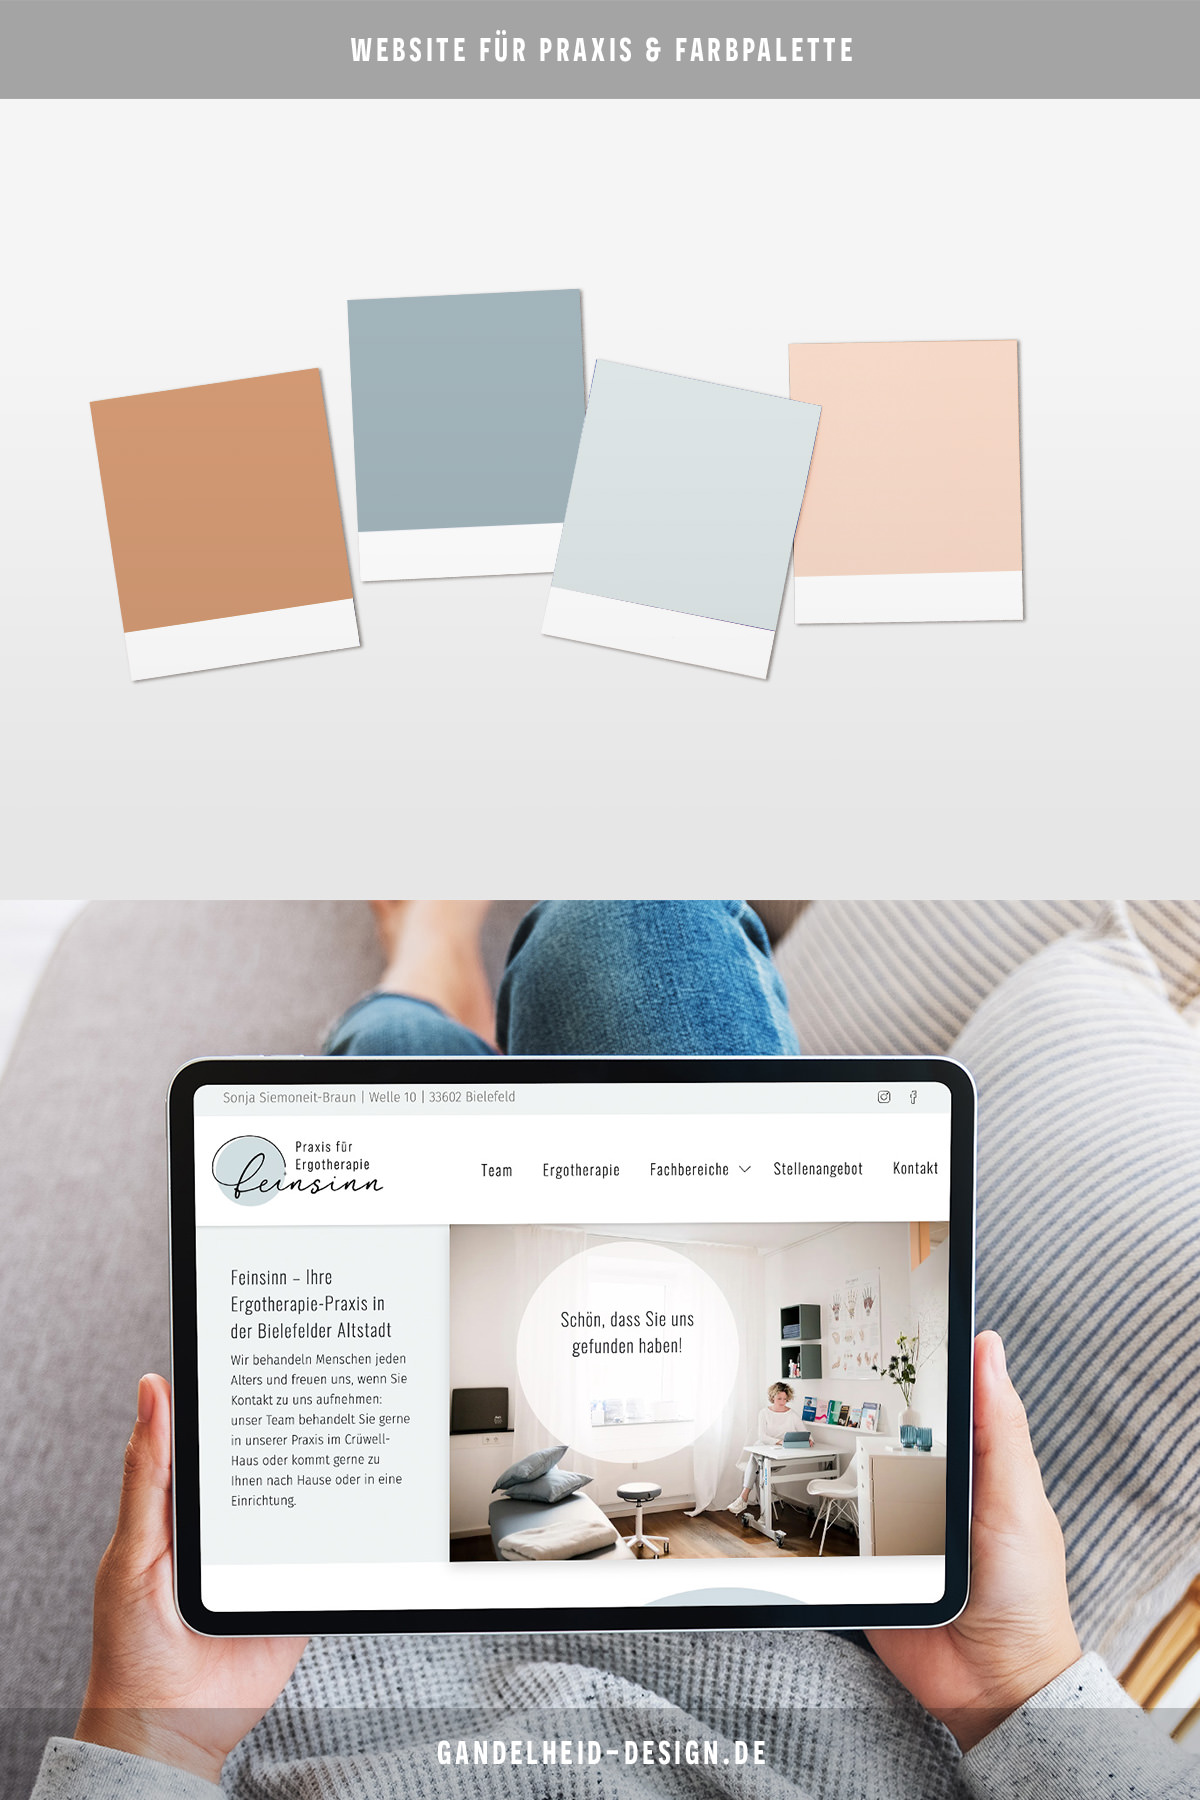 Farbpalette und Gestaltung für die Website